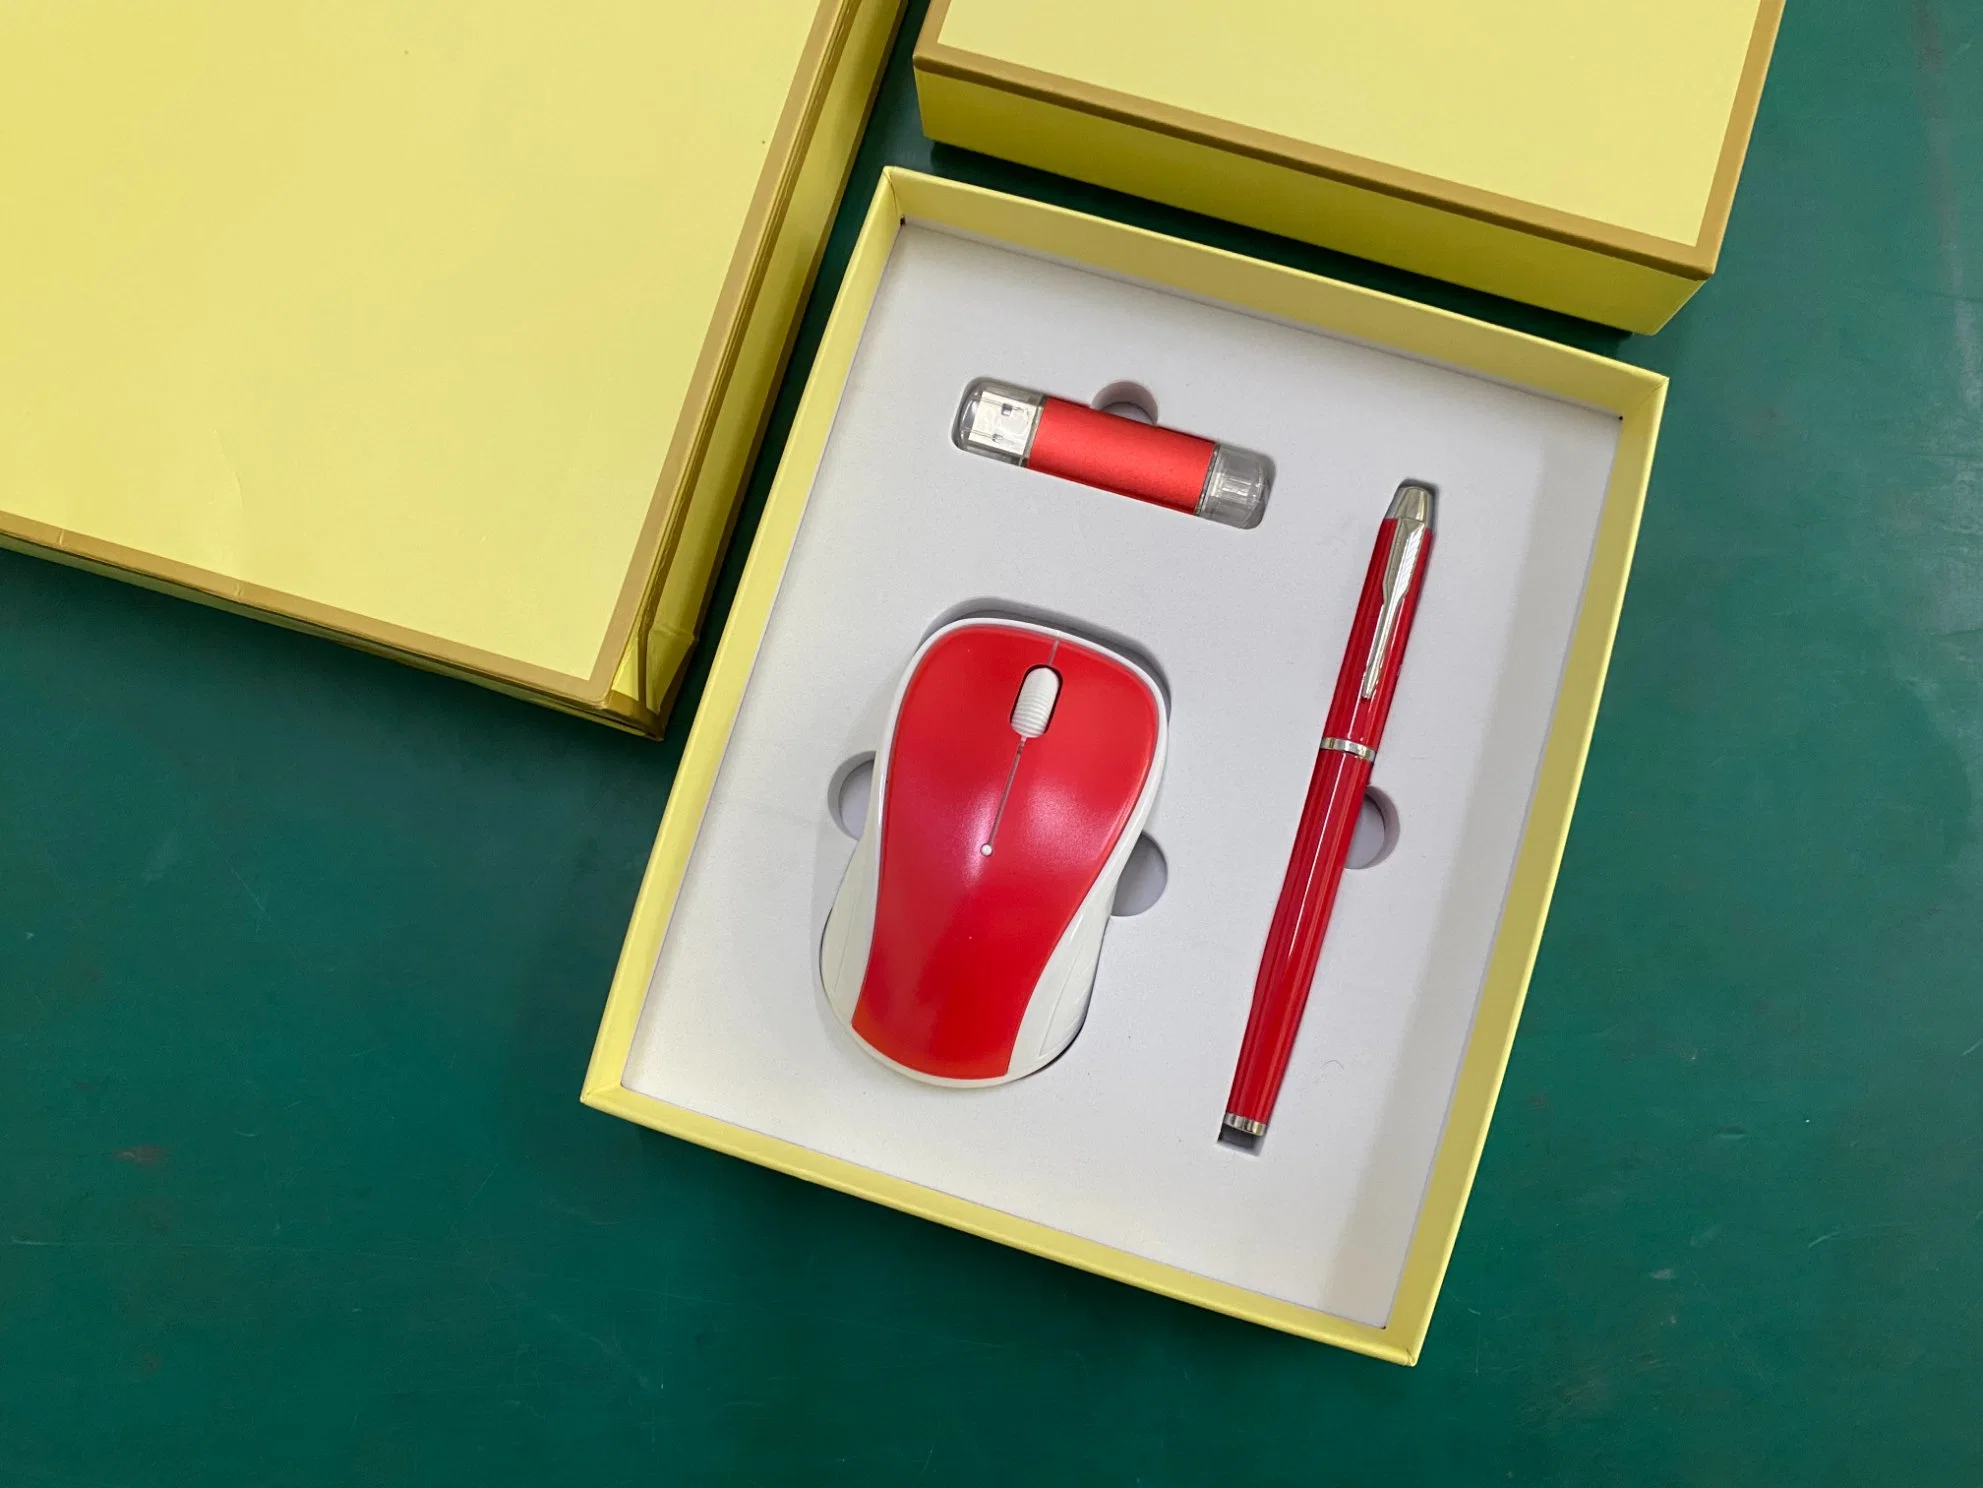 مجموعة هدايا للشركات البسيطة باستخدام قلم قرص من نوع Gold Mouse U للشركة